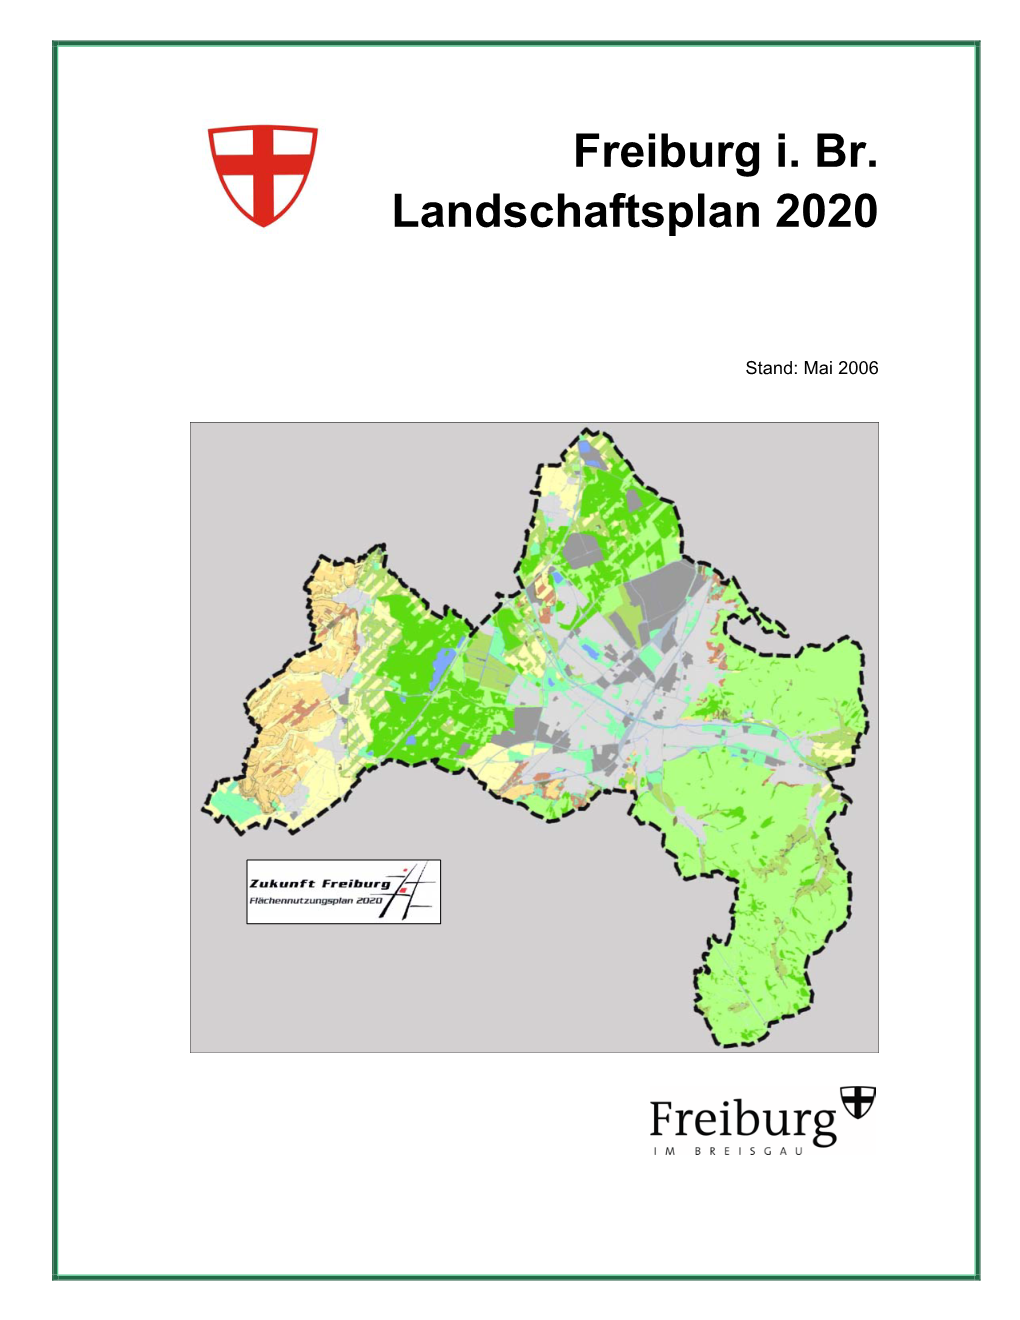 Freiburg I. Br. Landschaftsplan 2020